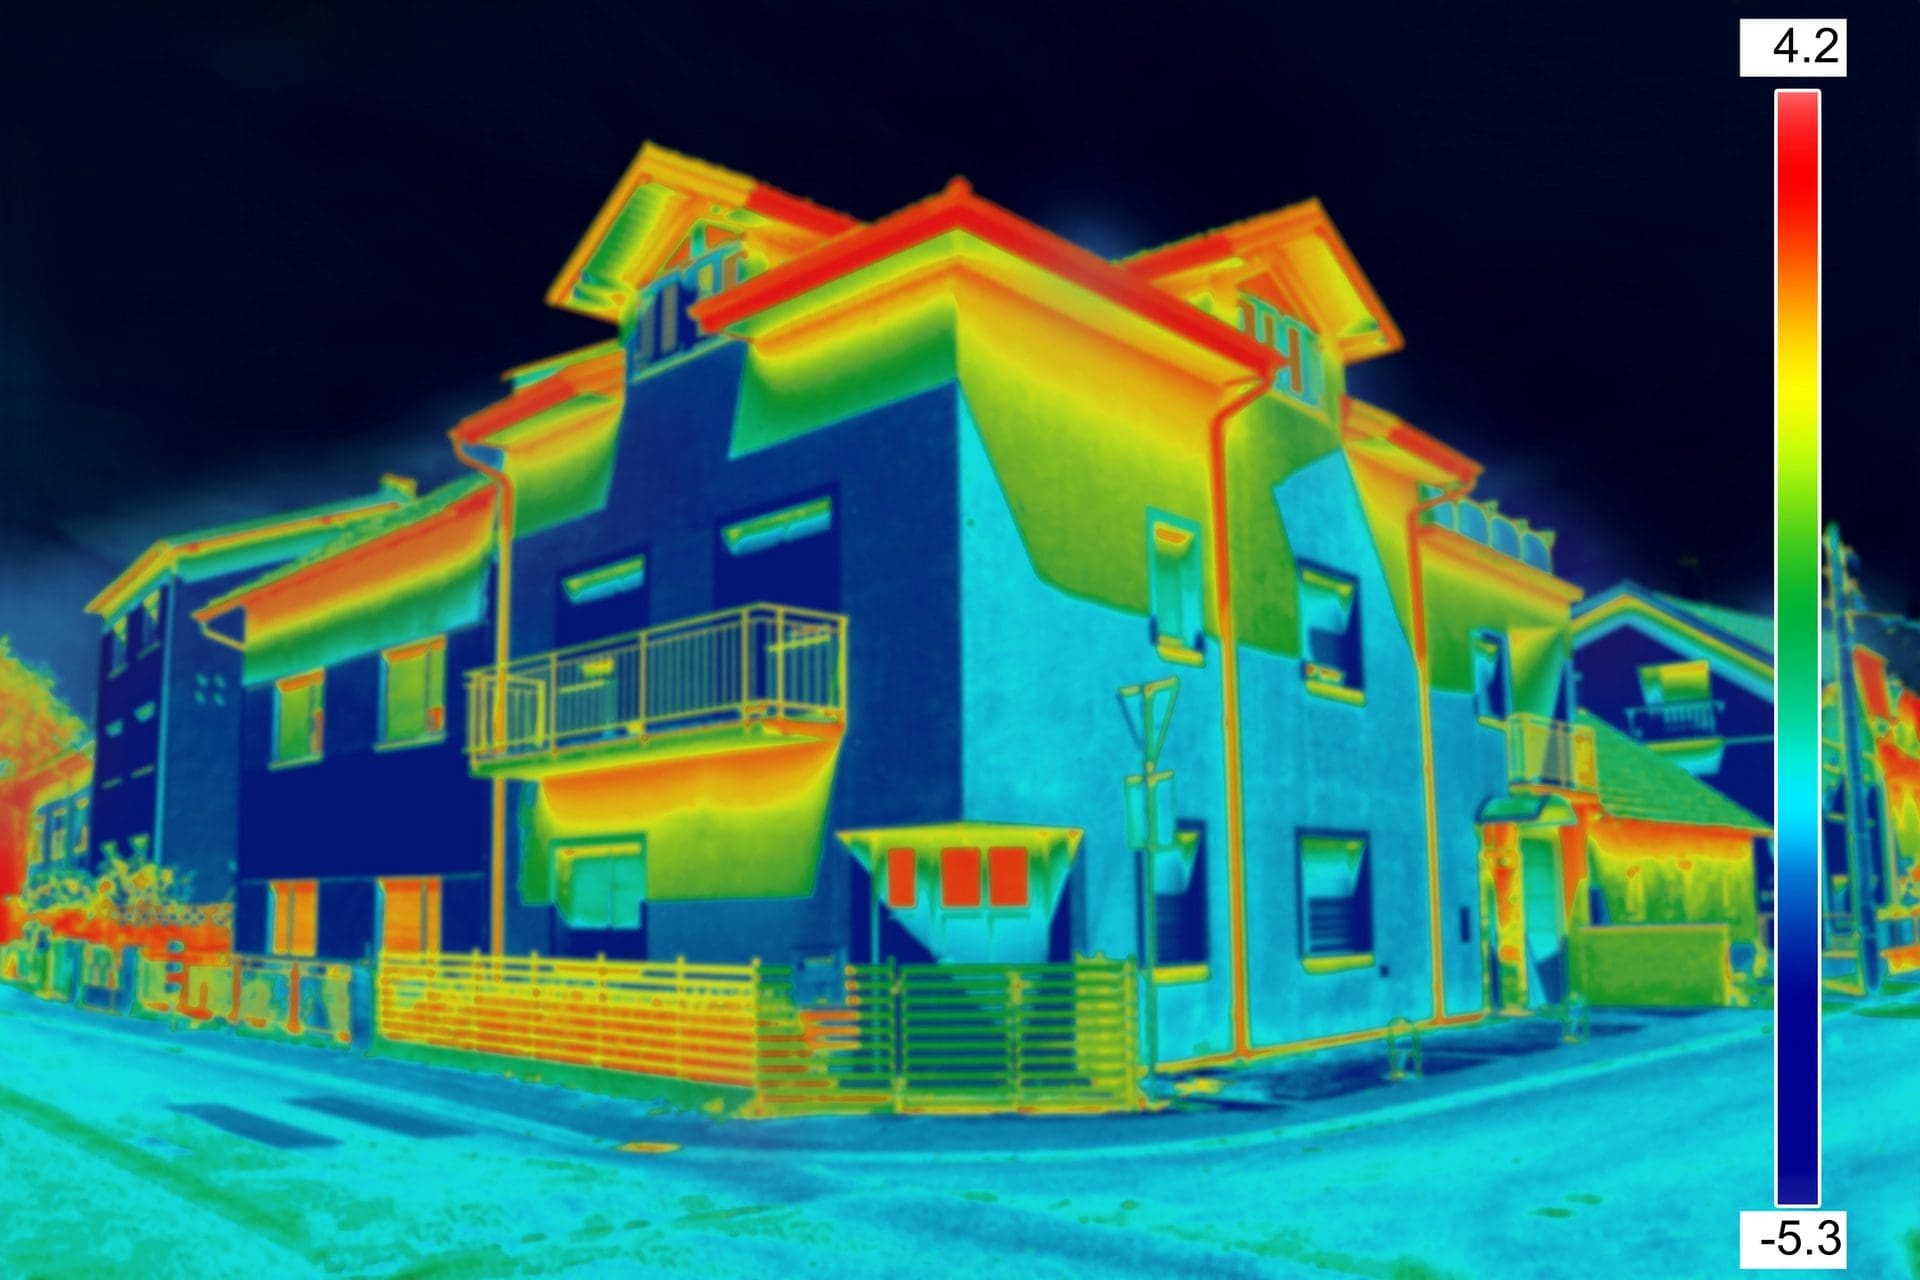 Wärmeverluste am Haus werden durch derartige Wärmebilder / Infrarotbilder einer Wärmebildkamera sichtbar gemacht (© smuki / stock.adobe.com)